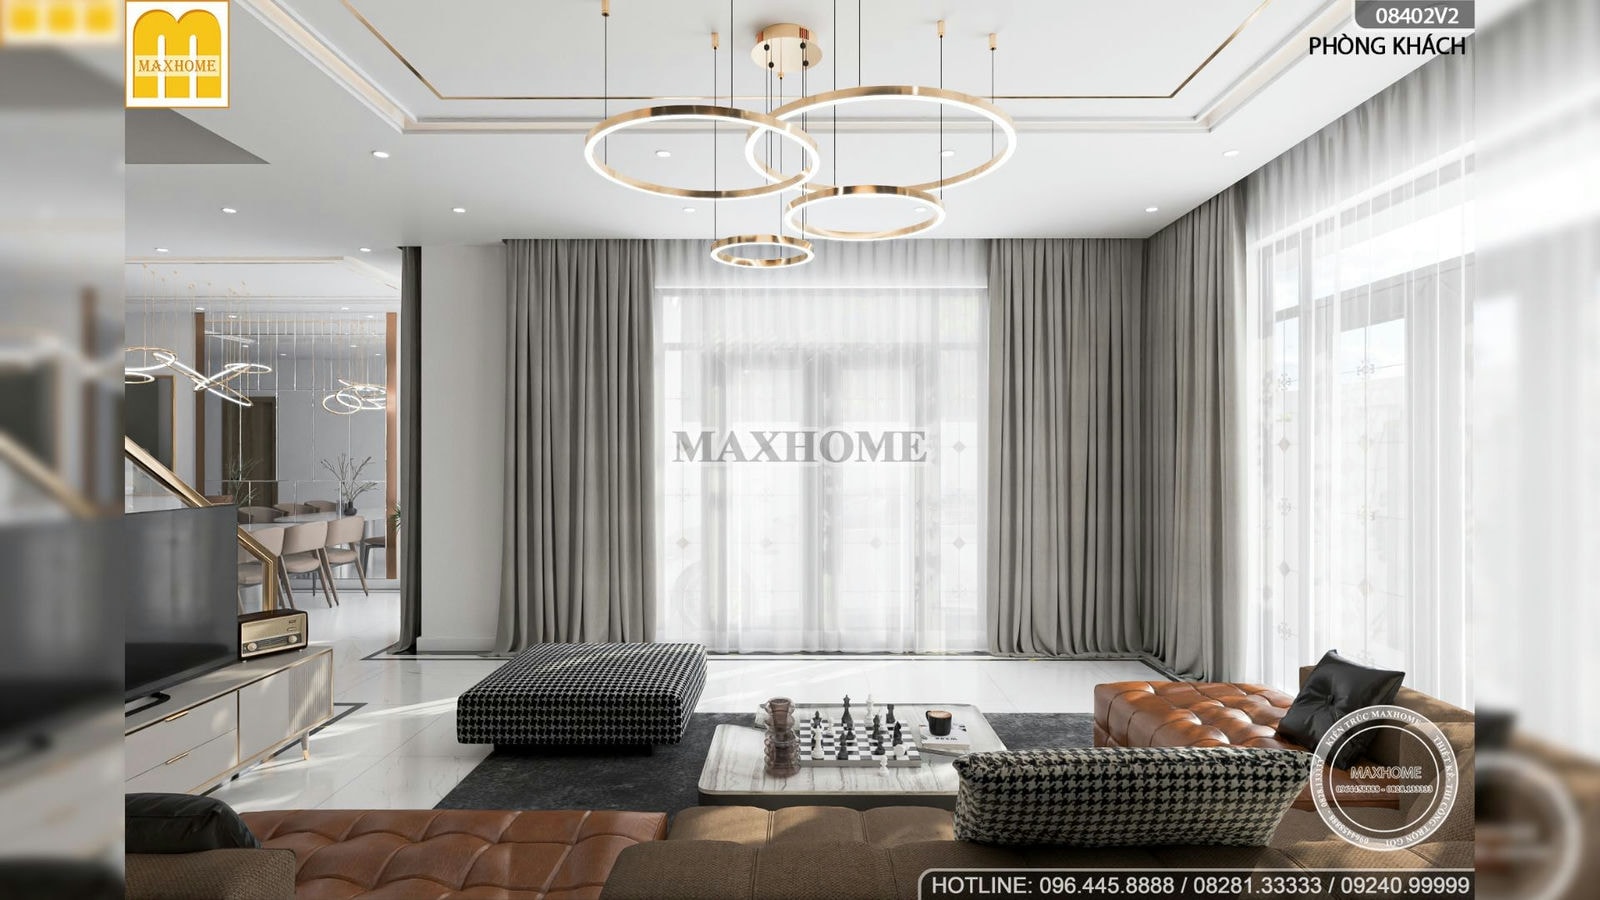 Mẫu thiết kế nội thất đẹp nhất 2023 do khách hàng bình chọn | MH01722